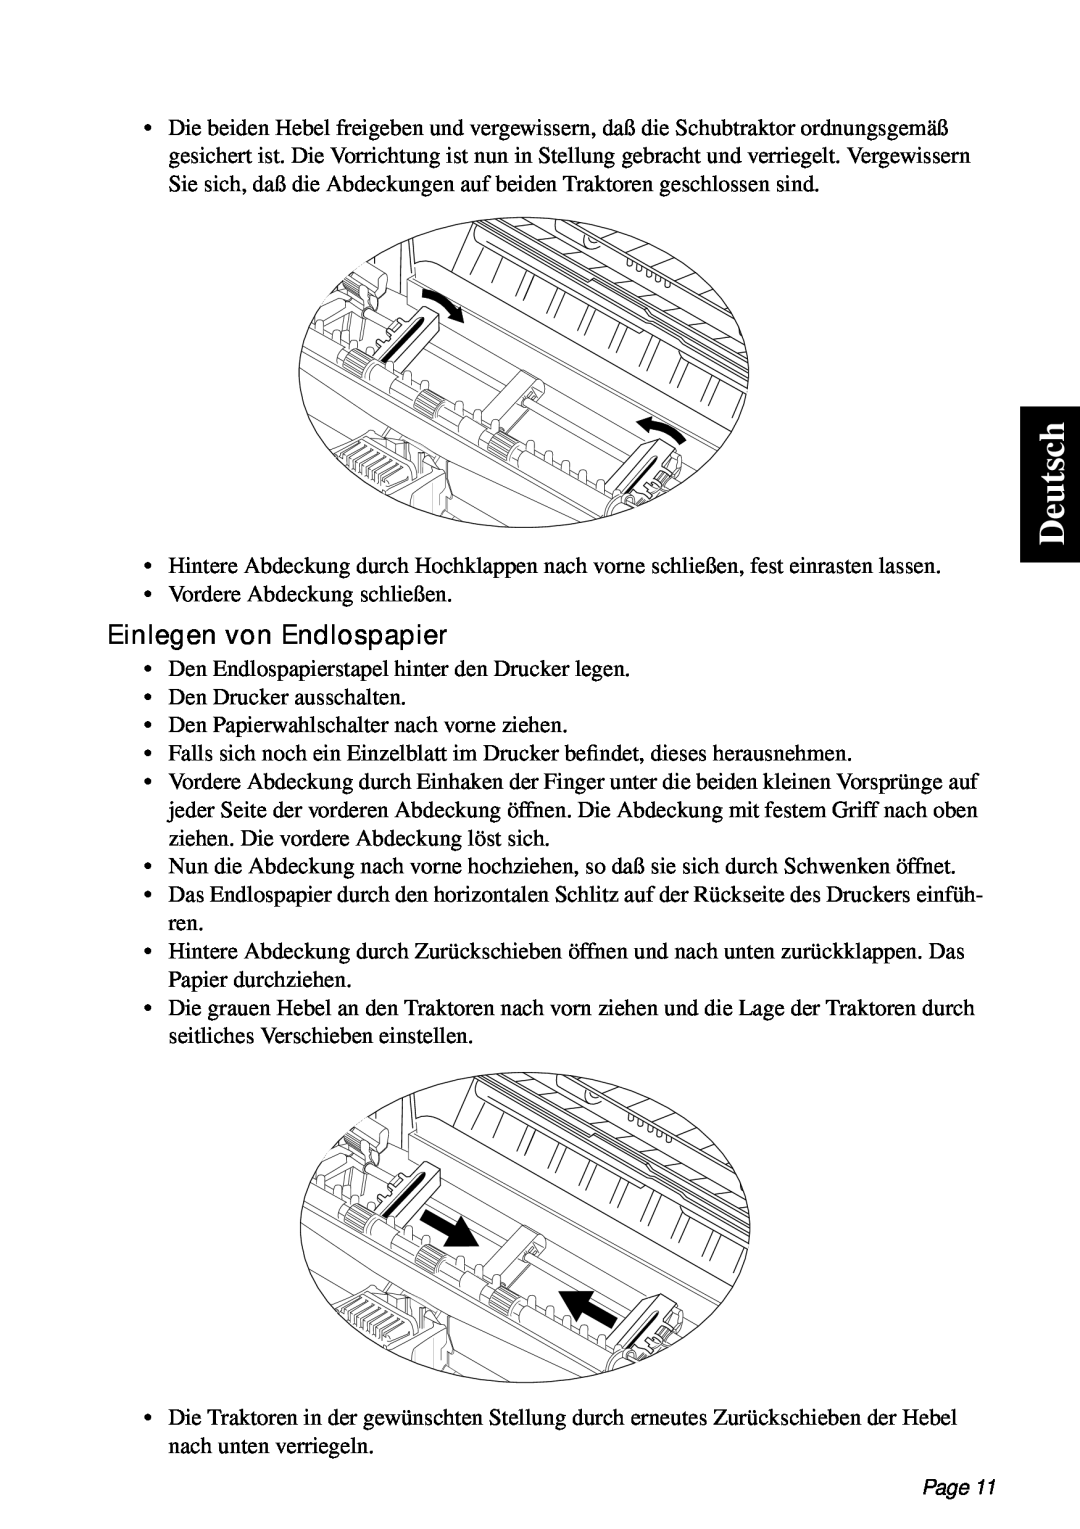 Star Micronics PT-10Q user manual Deutsch, Einlegen von Endlospapier, Page 